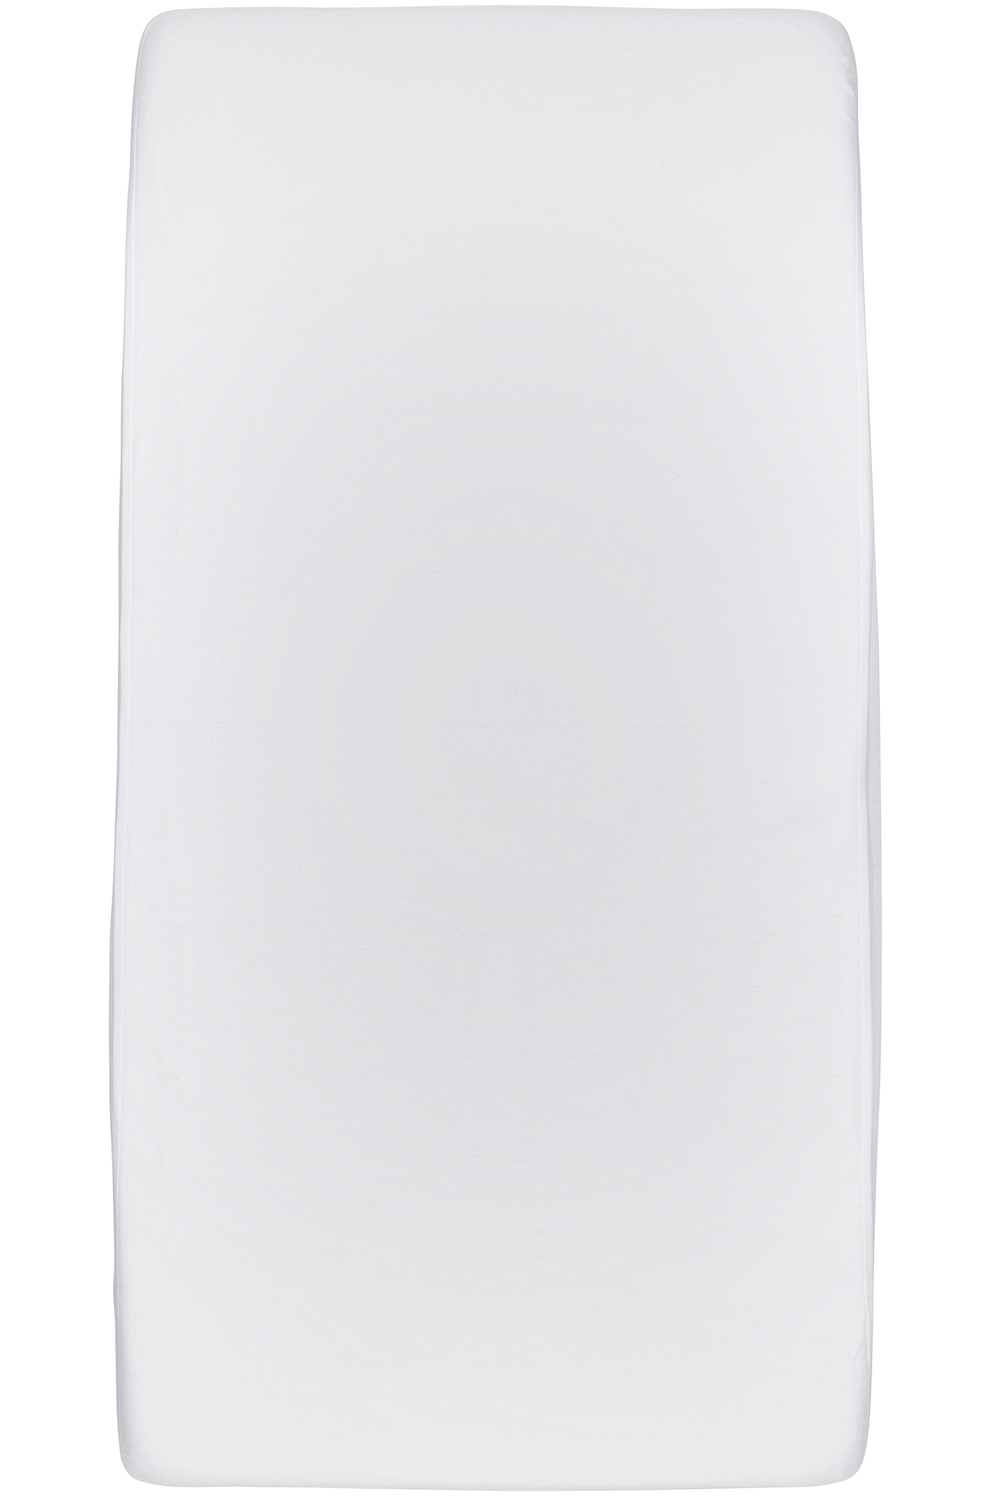 Waterdicht hoeslaken twijfelaar - white - 120x200cm